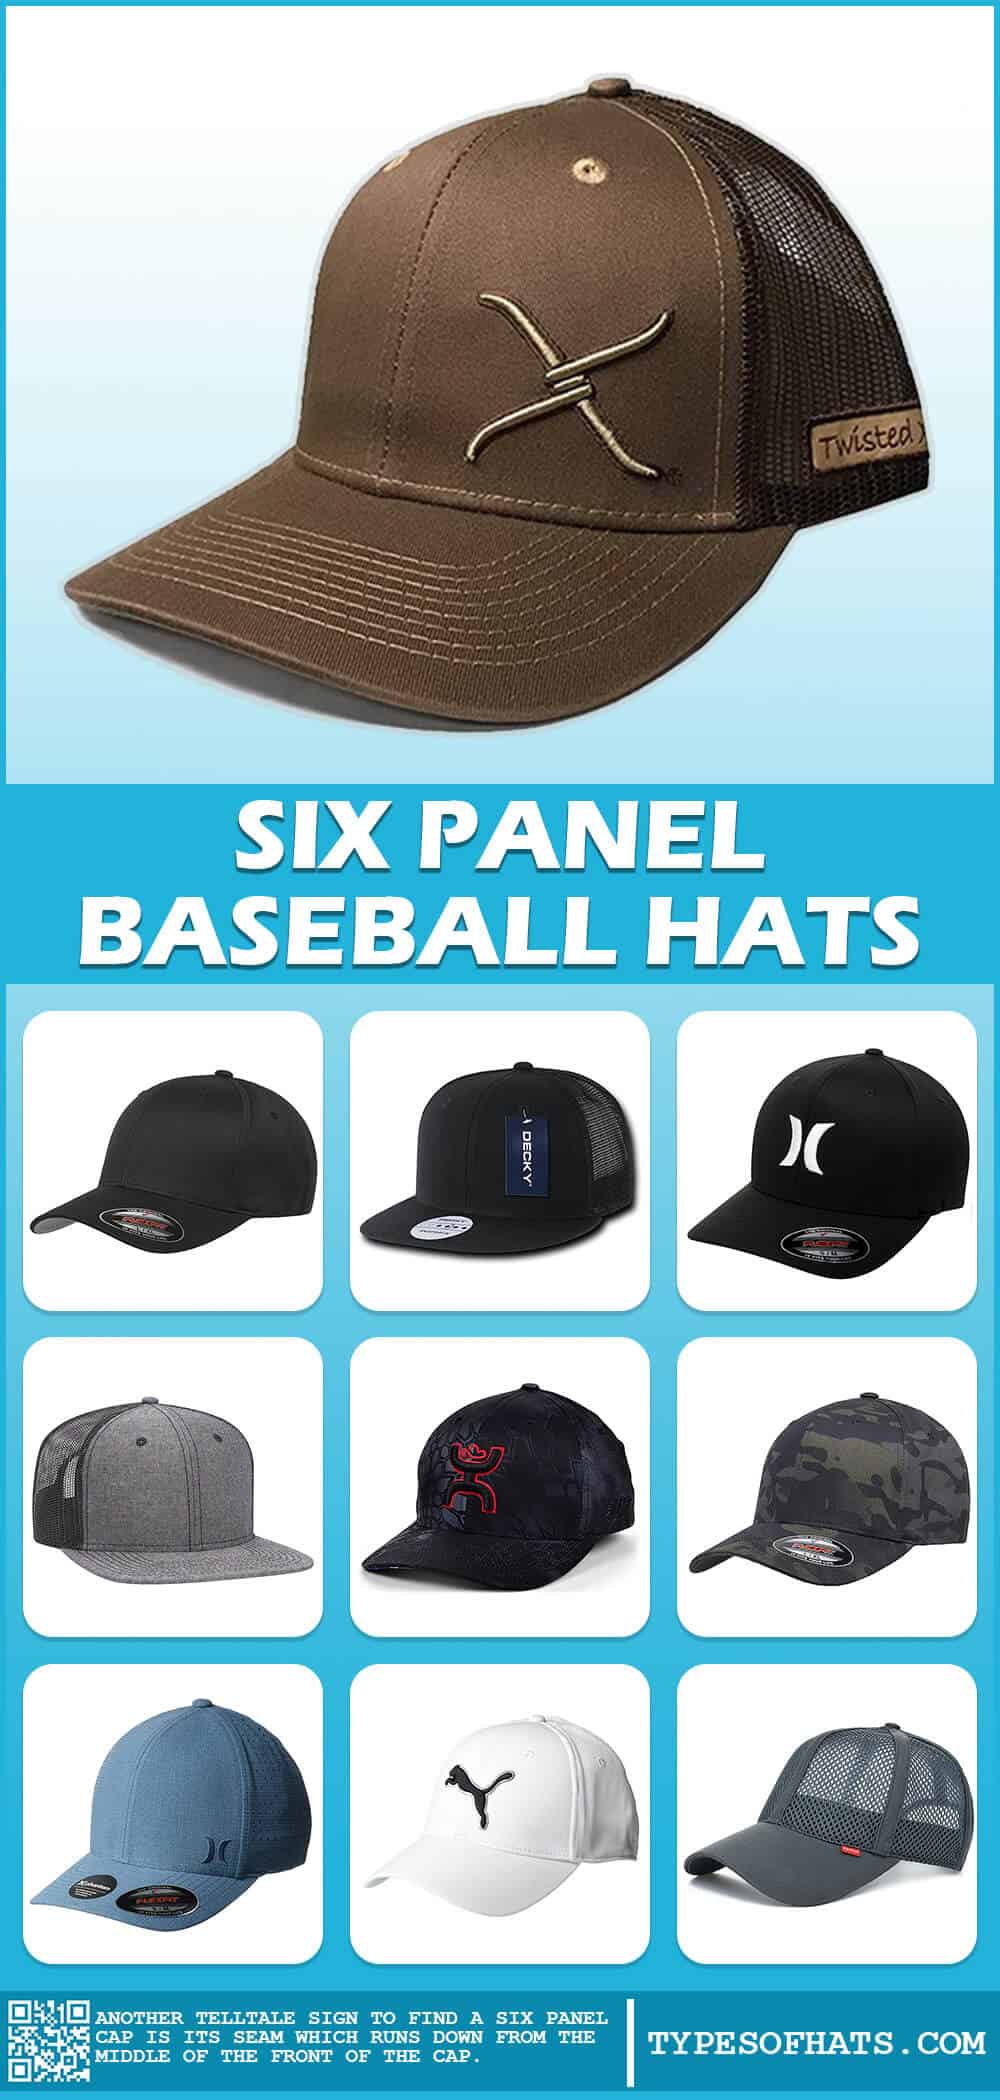 Six Panel Baseball Hats